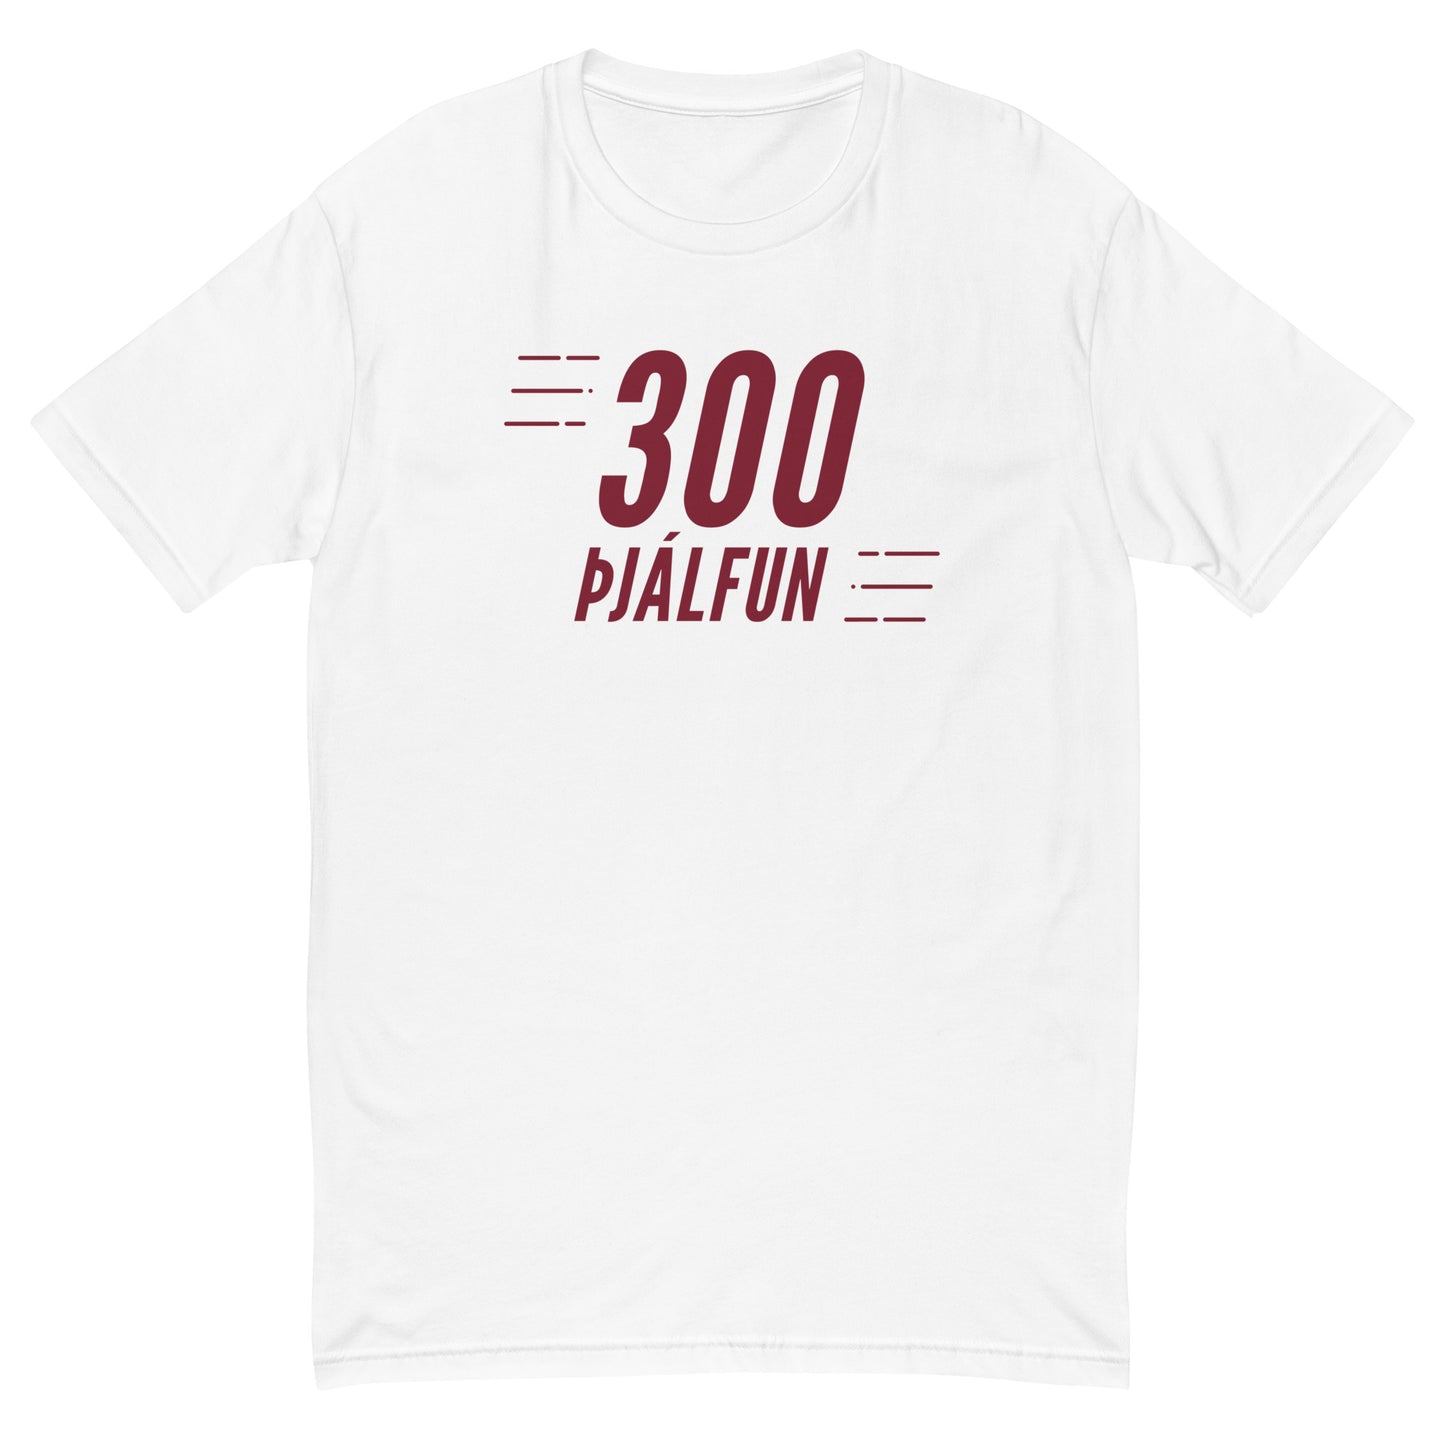 300 Þjálfun Svartur,grár og hvítur Short Sleeve T-shirt